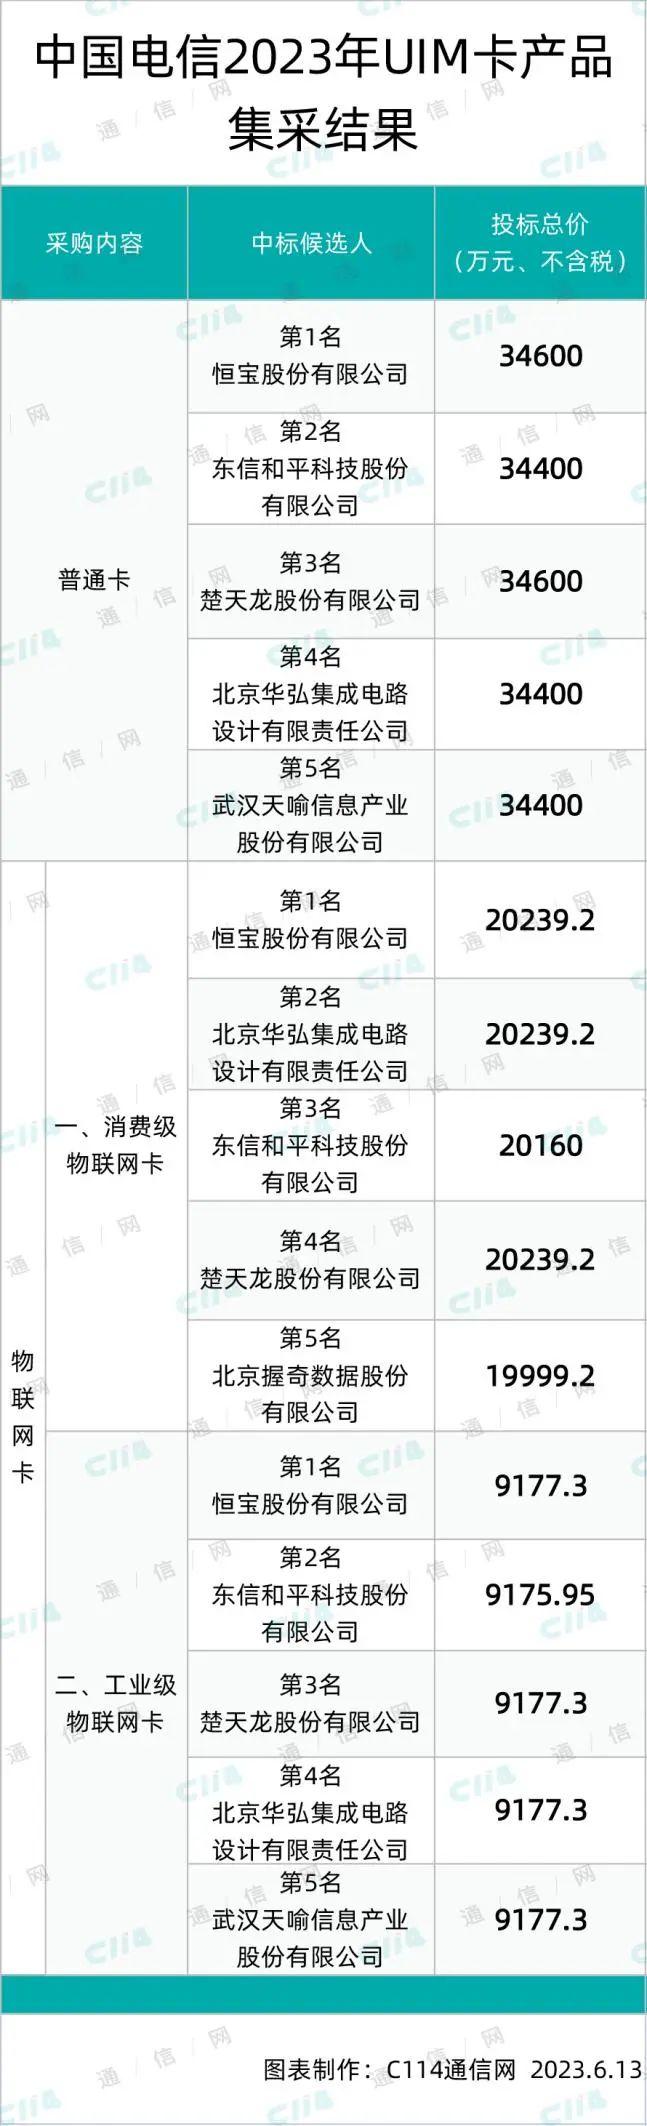 中国电信UIM卡产品集采：恒宝、东信和平、华弘等6家入围